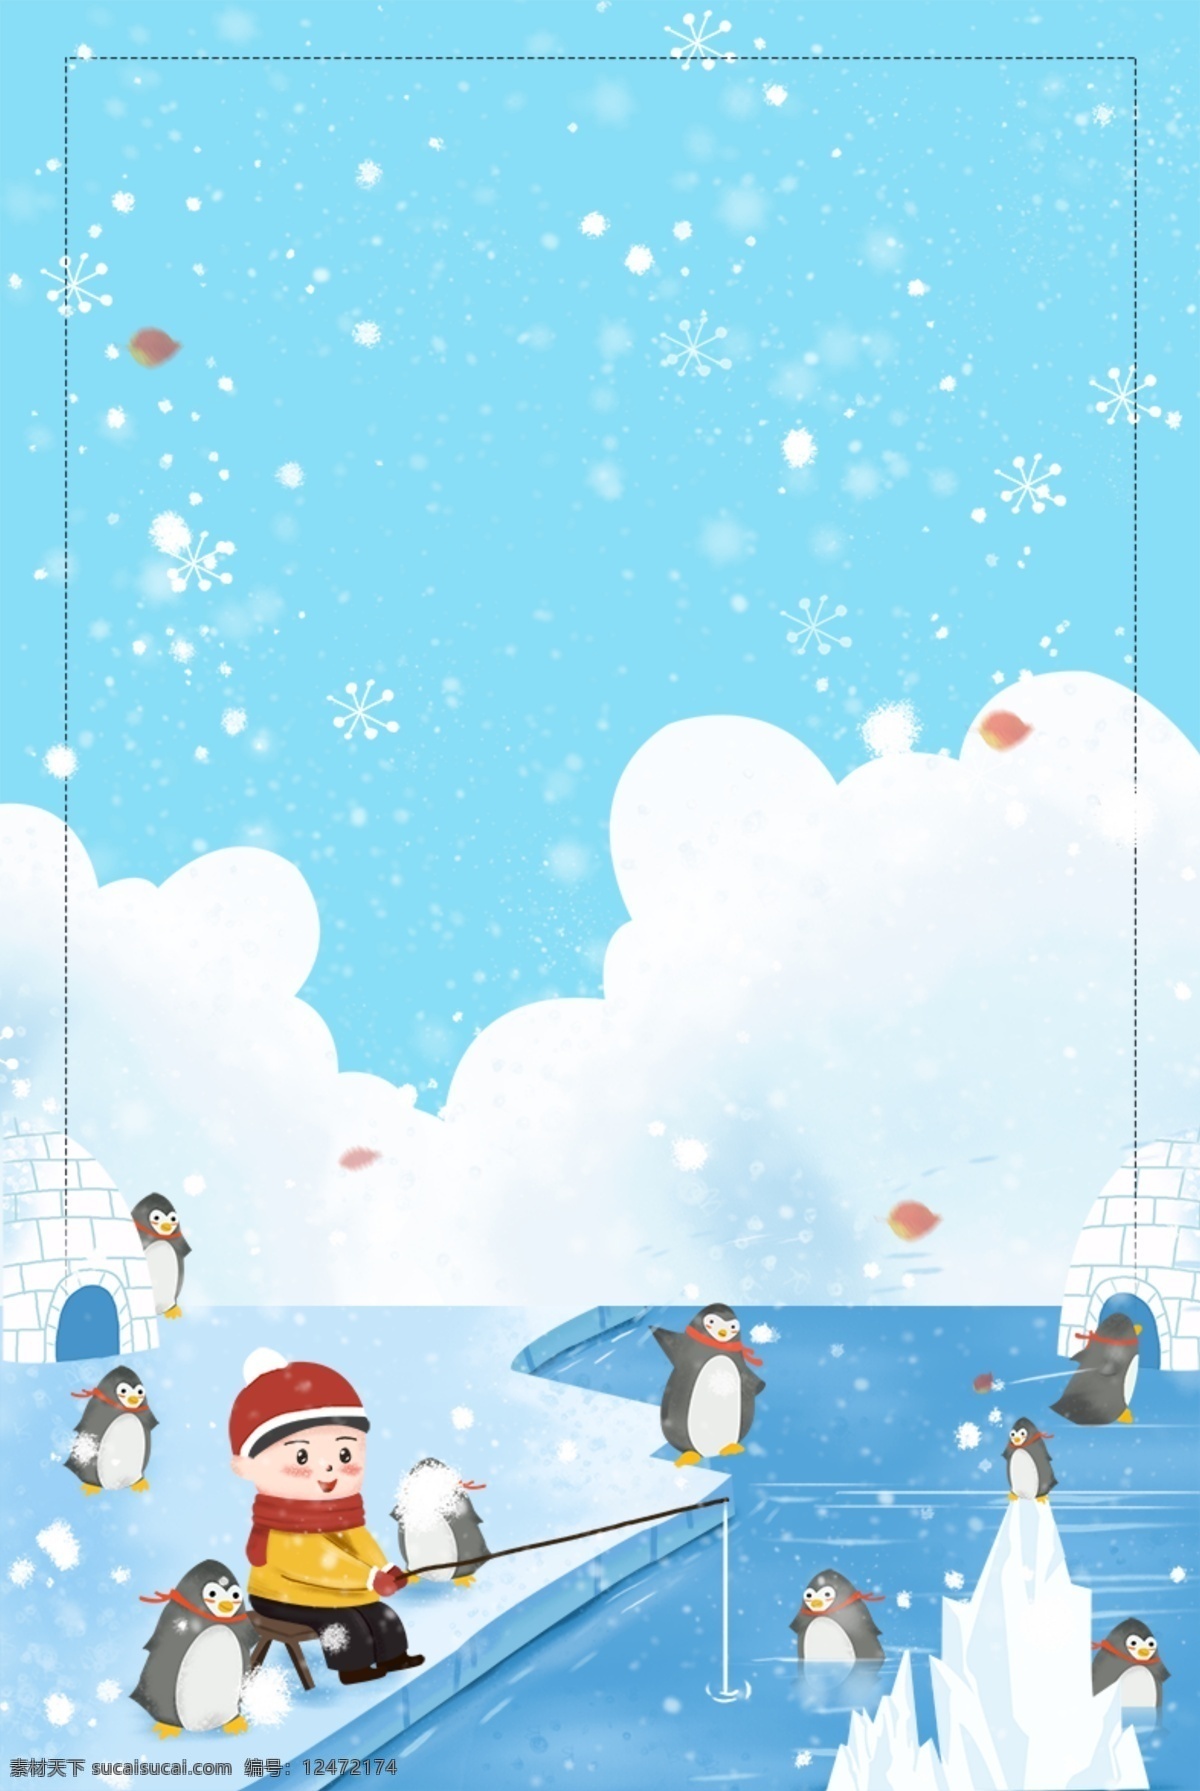 冬季 大雪 节气 雪地 企鹅 背景 雪花 中国风 冬天 唯美 北极 大雪背景 大雪节气 冬季大雪 彩绘背景